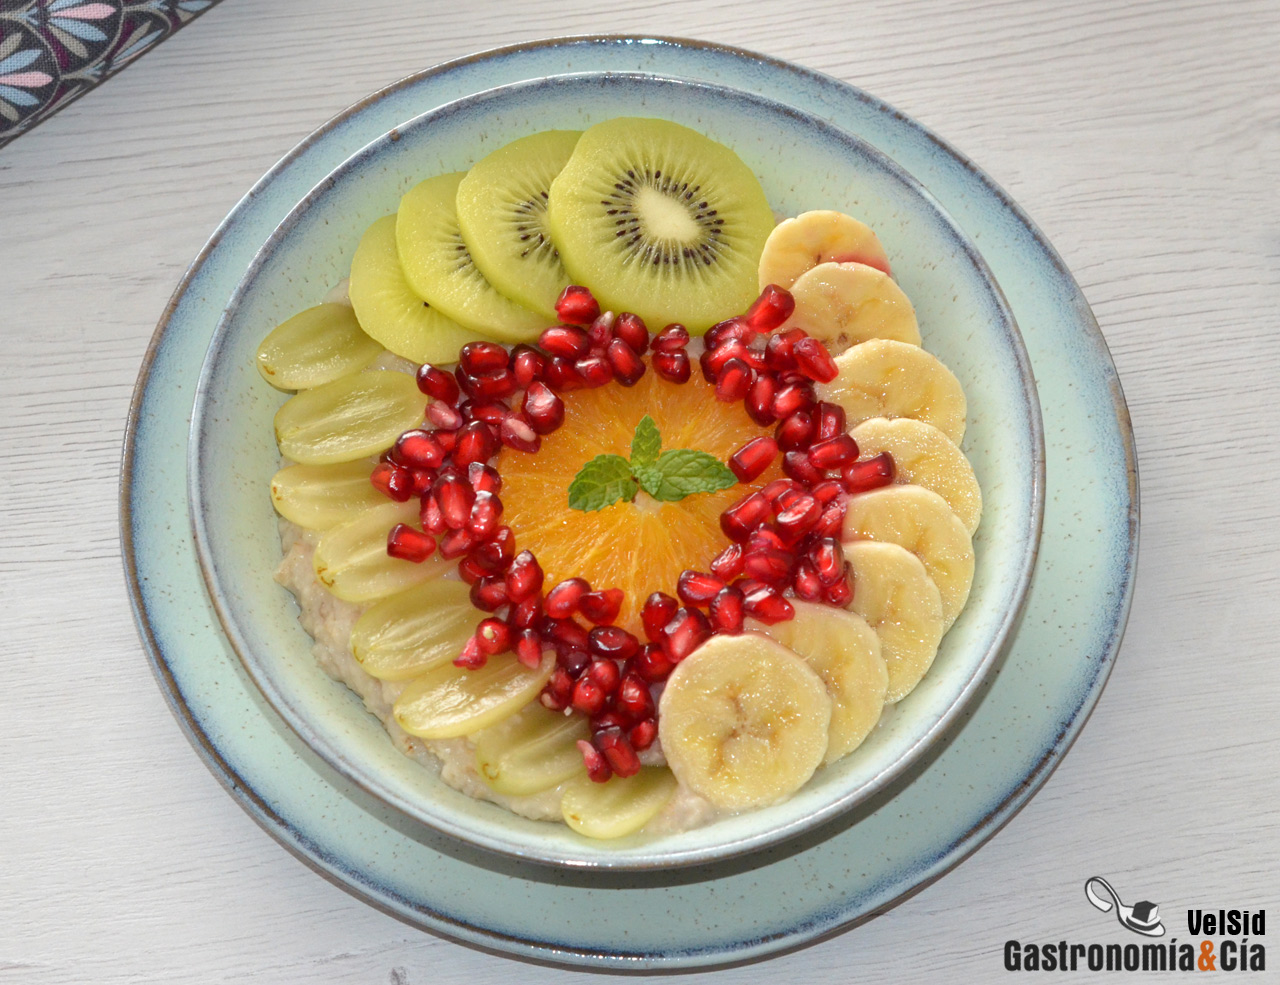 Desayuno de avena con frutas de otoño, una receta fácil